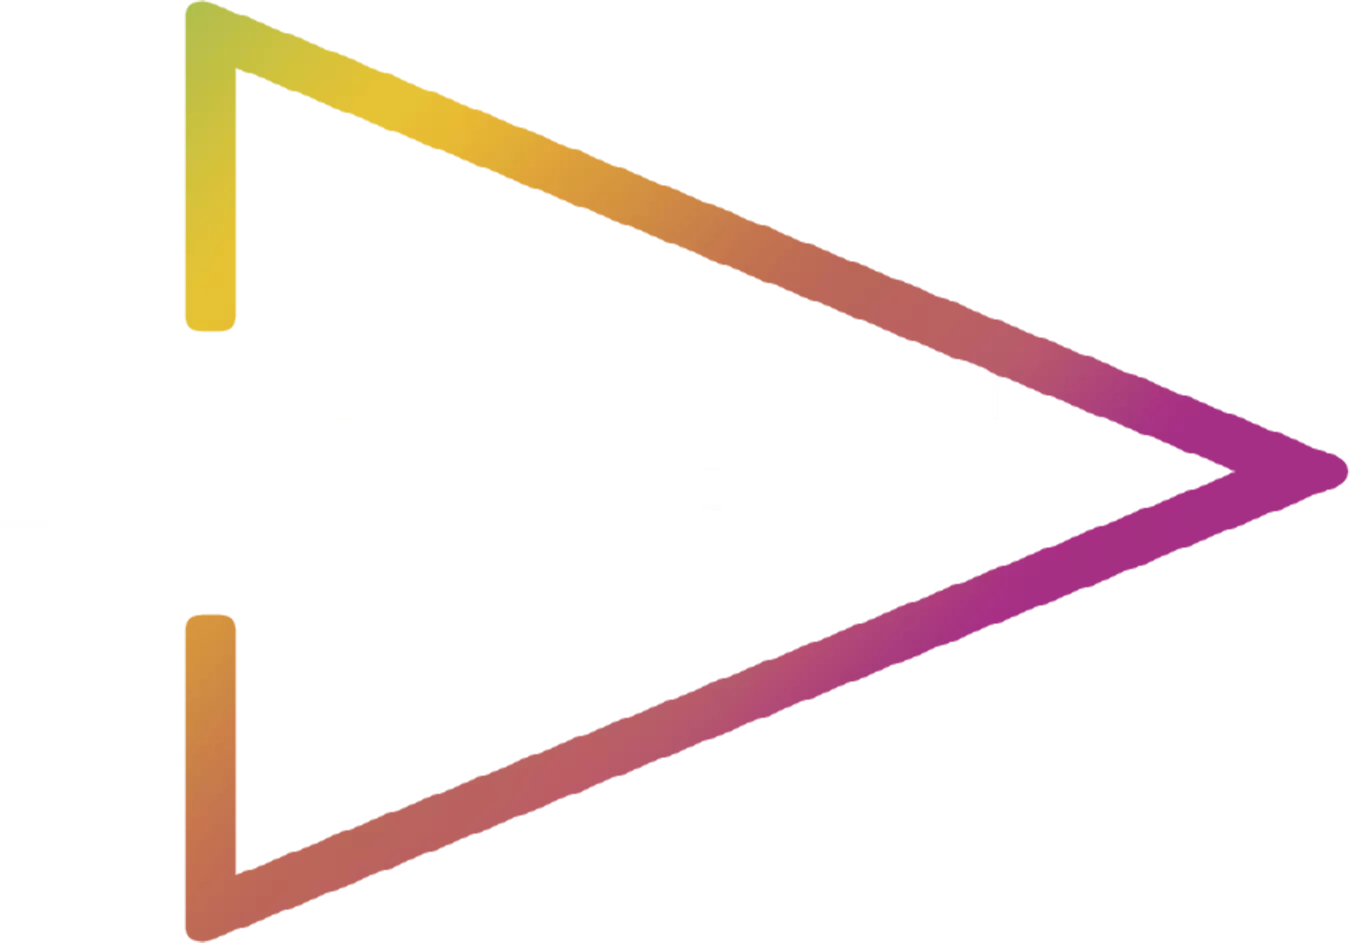 Logo Start